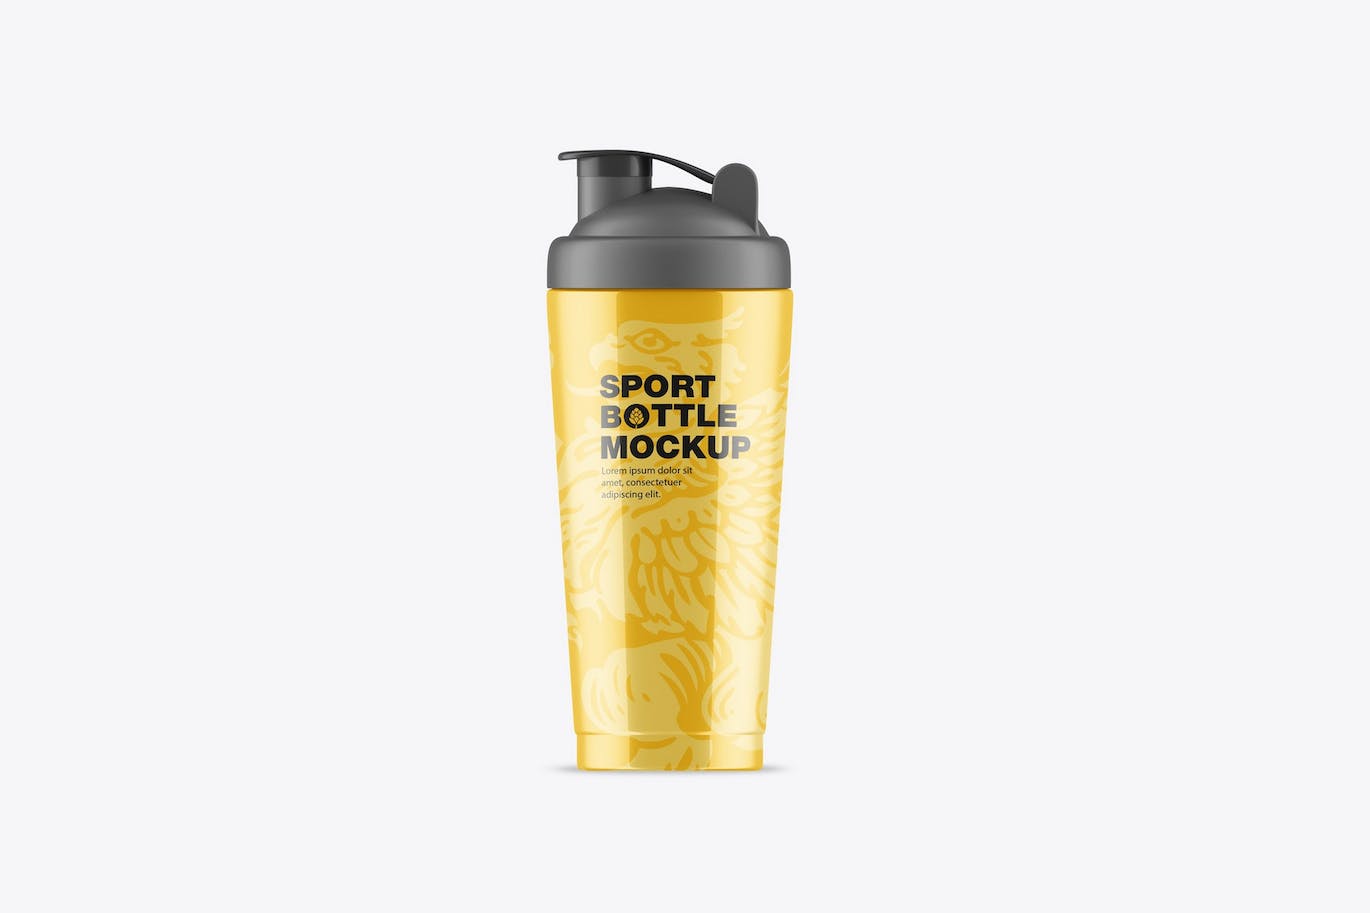 健身房运动水瓶包装设计样机 Gym Bottle Mockup 样机素材 第1张